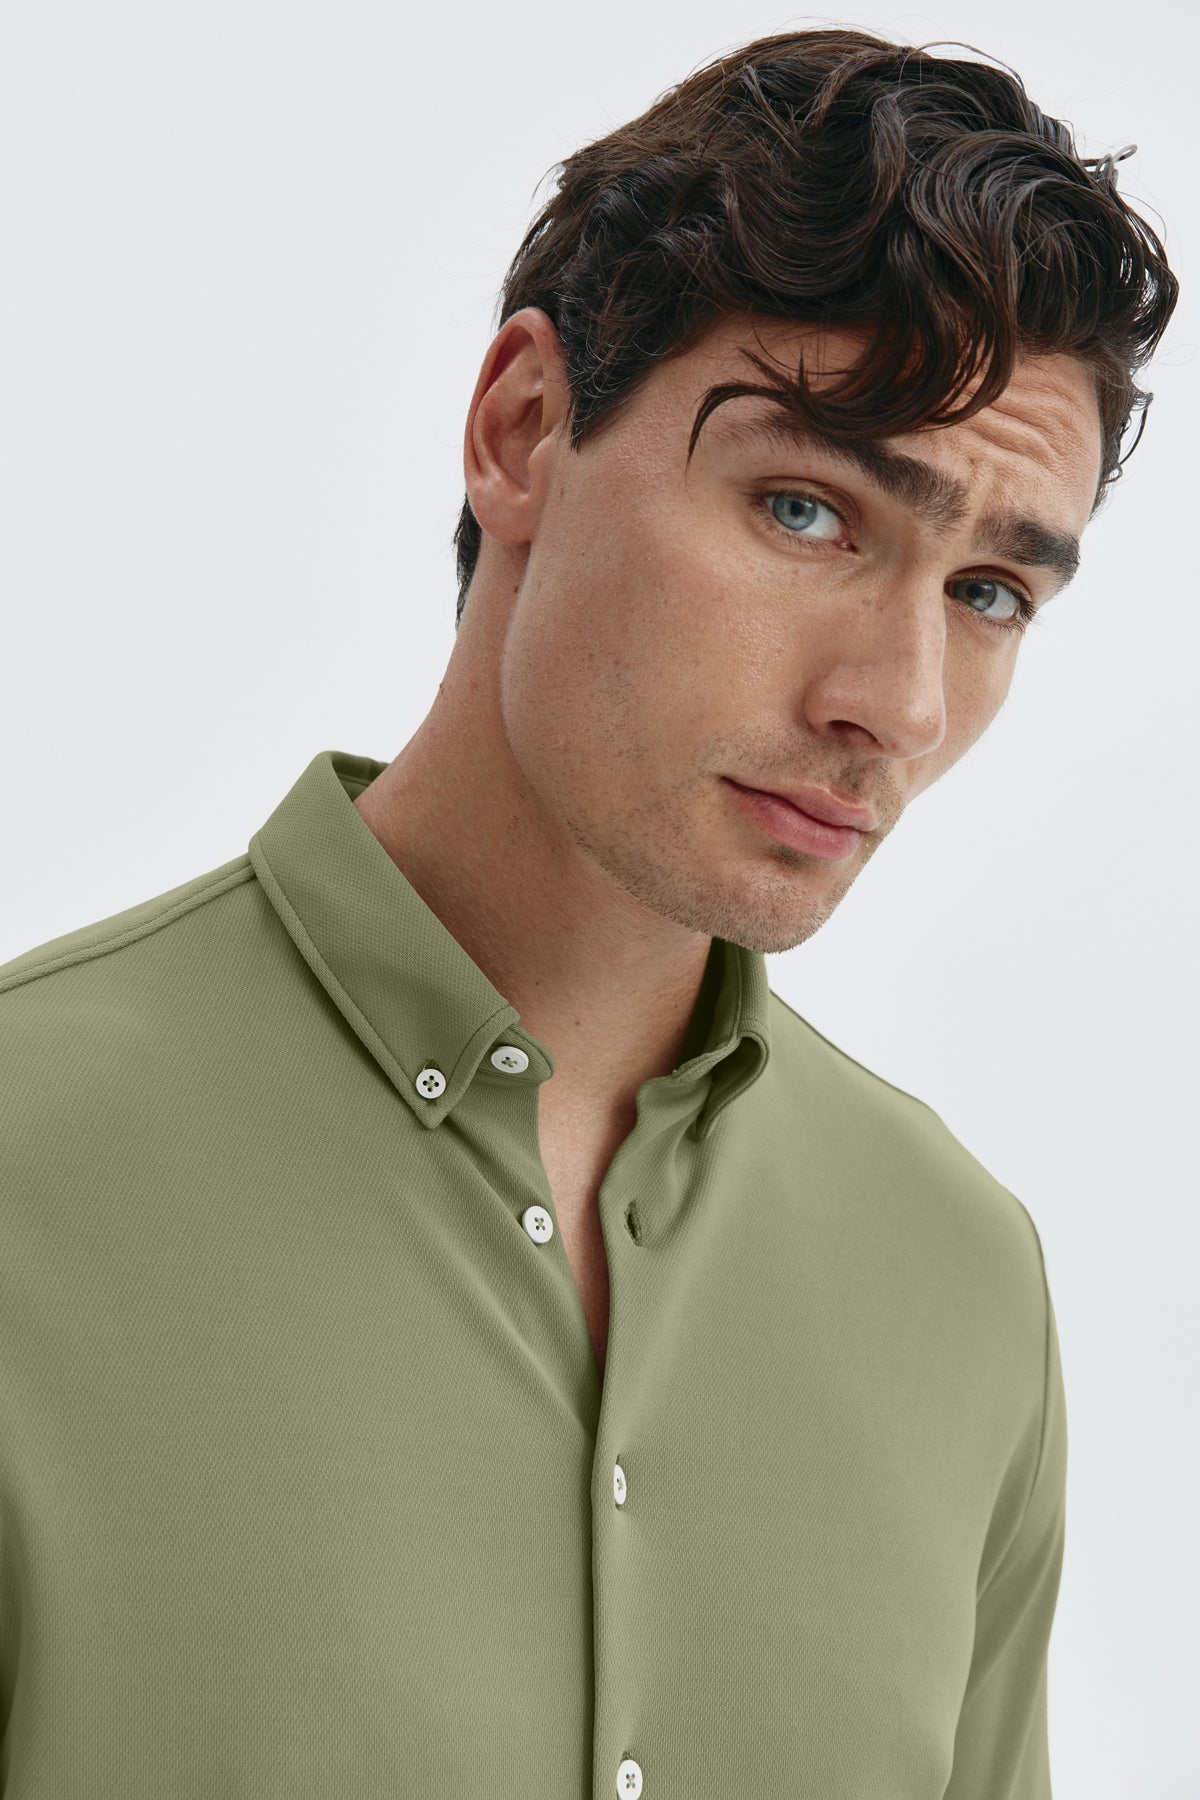 Camisa casual verde malaquita para hombre sin arrugas ni manchas. Manga larga, antiarrugas y antimanchas. Foto retrato